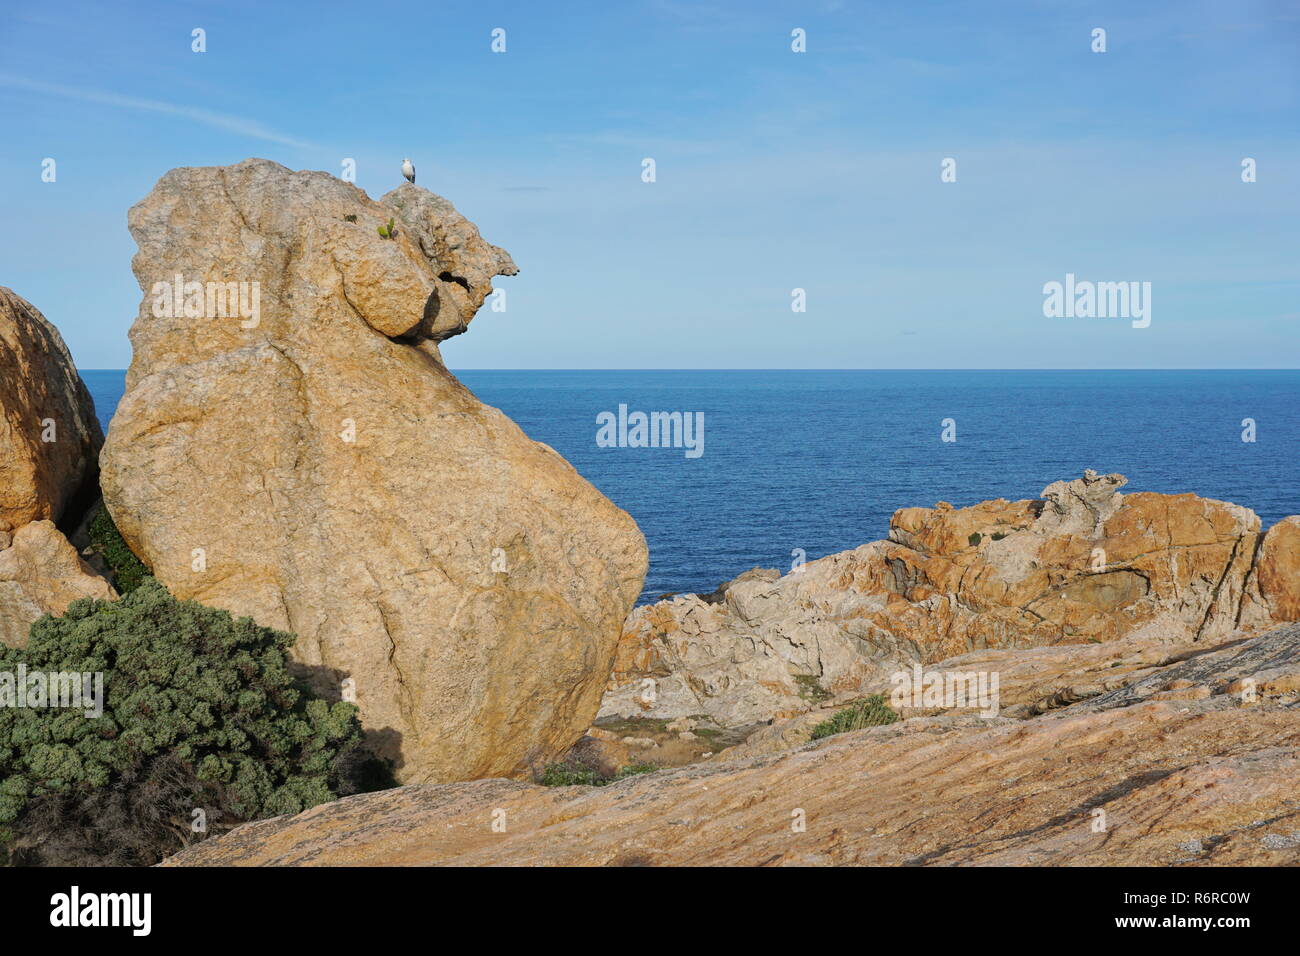 Formación rocosa con el mar Mediterráneo al fondo, el parque natural del Cap de Creus, el Camell del Pla de Tudela, España, Costa Brava, Cataluña Foto de stock